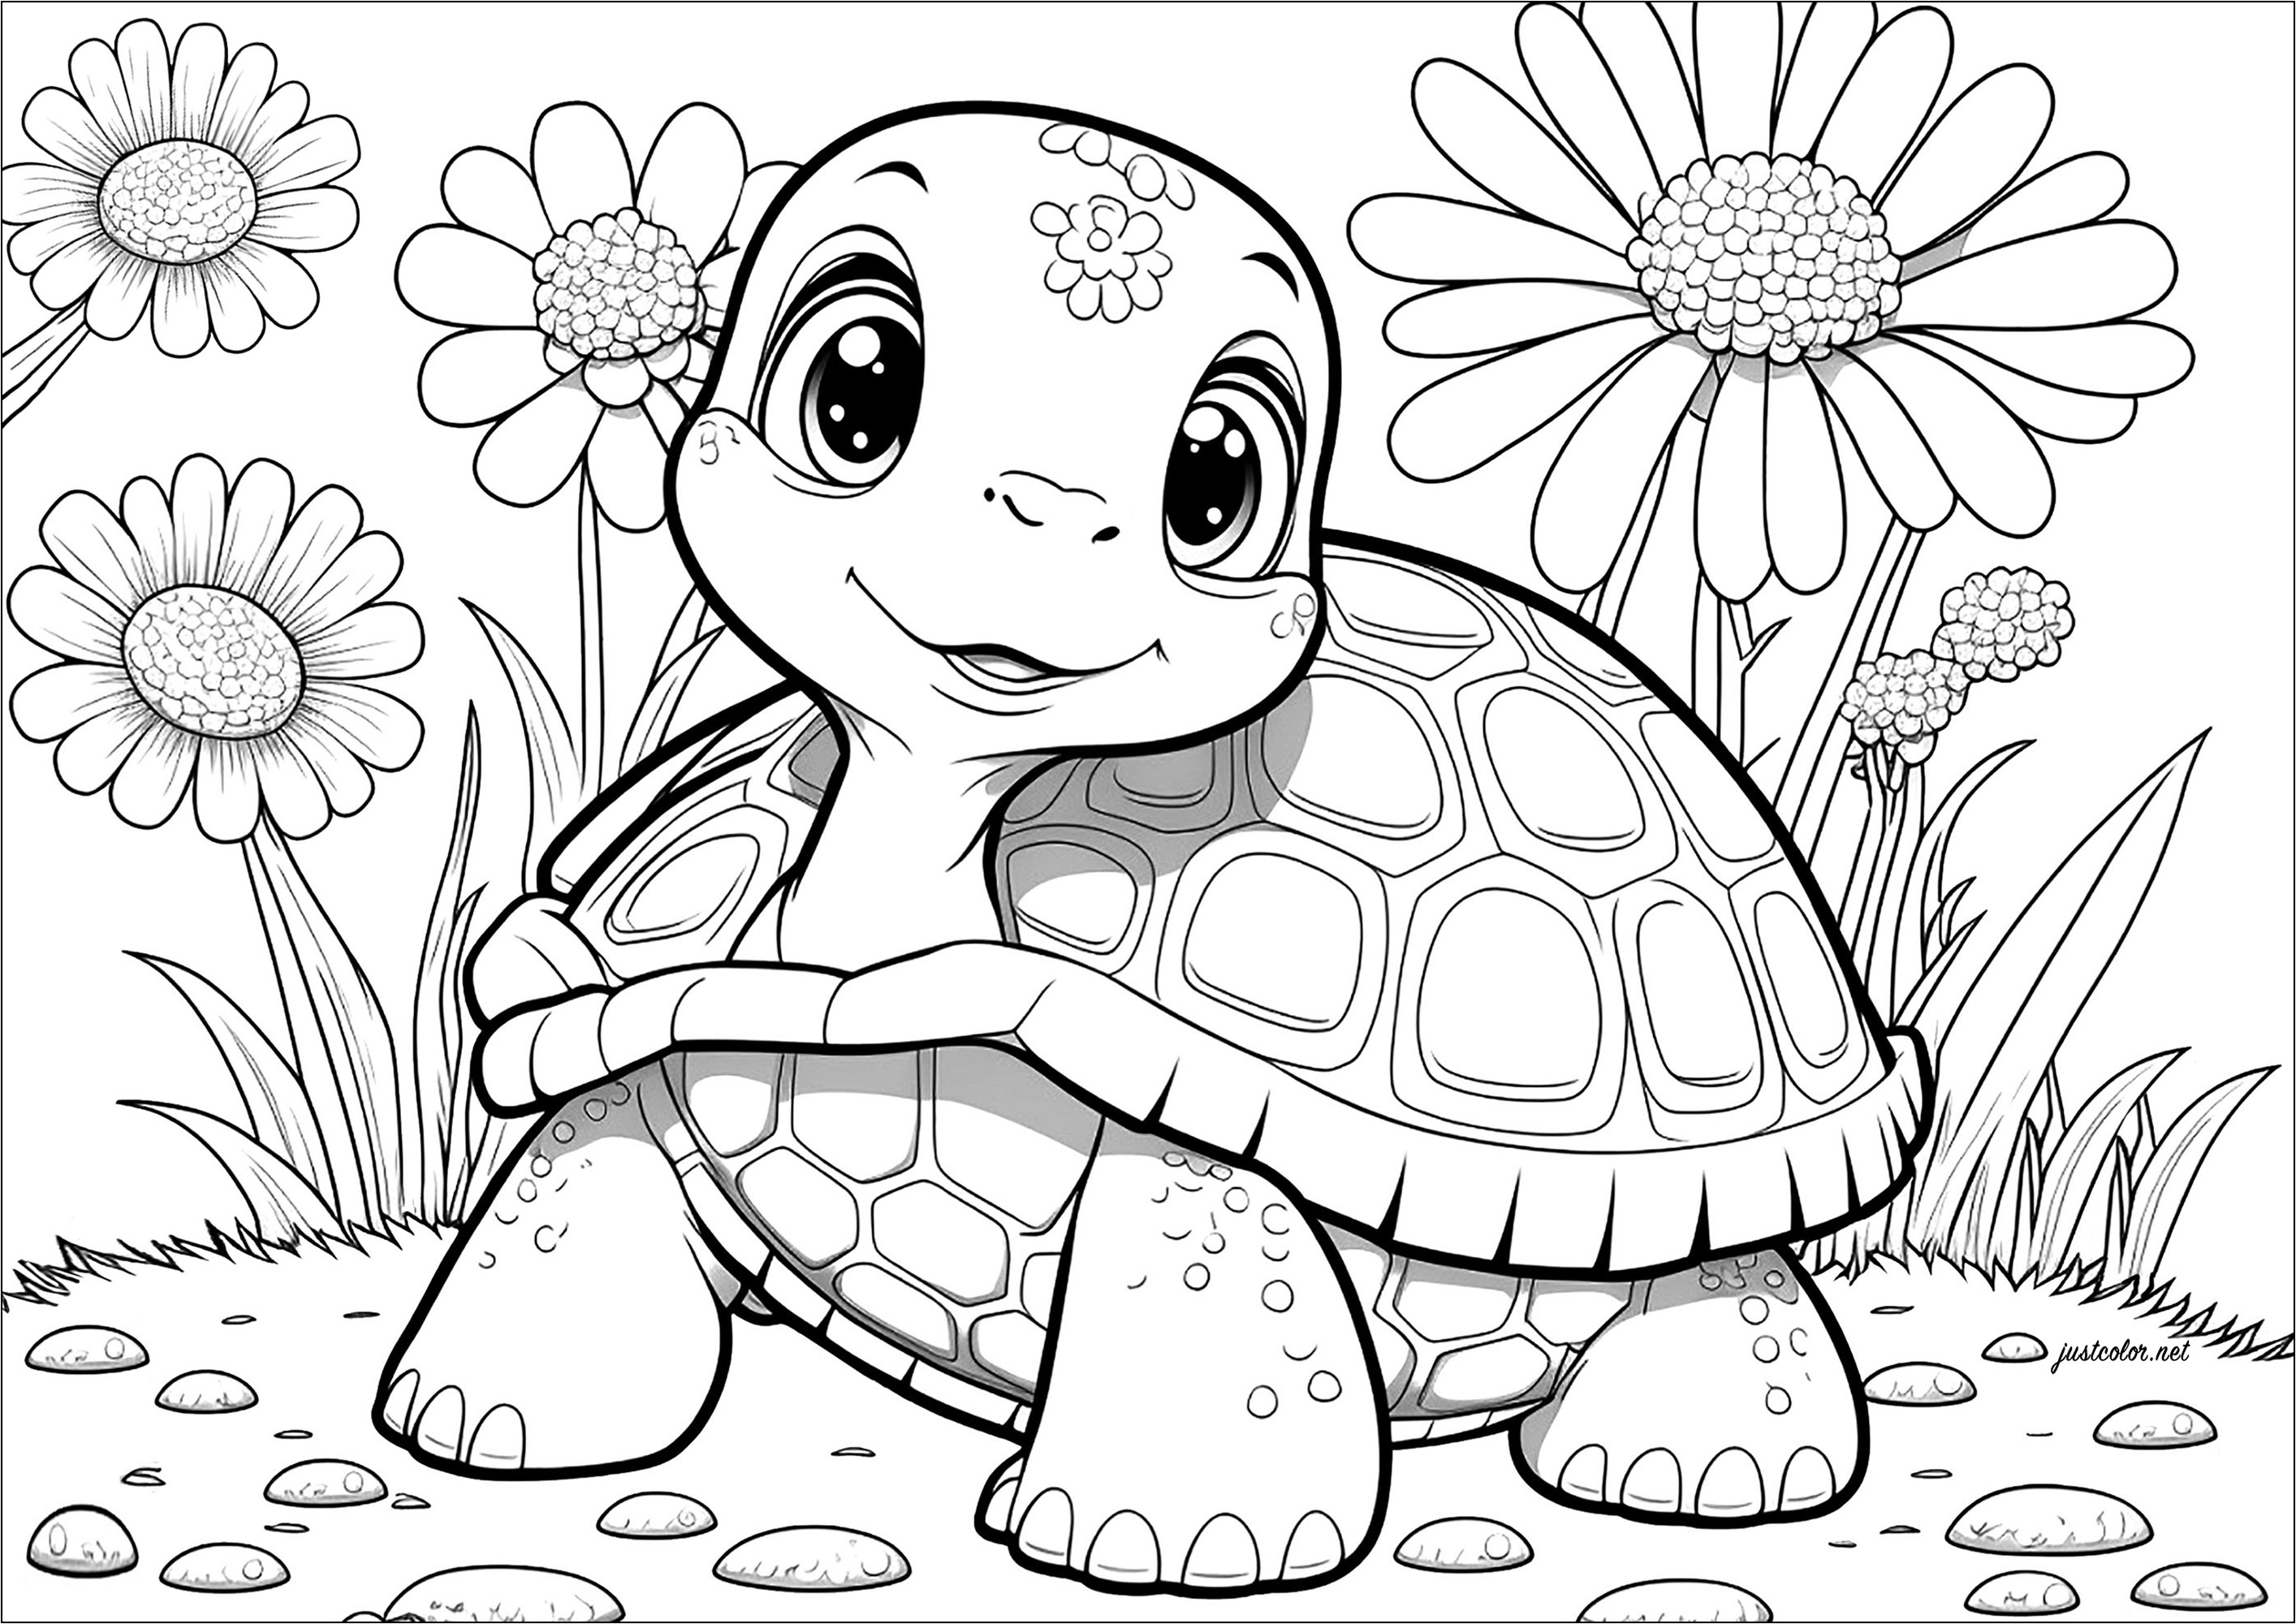 Una tartaruga molto infantile da colorare, ma con molti dettagli!. Seguite questa tartaruga terrestre nelle sue lente ma sicure avventure in questa divertente pagina da colorare.